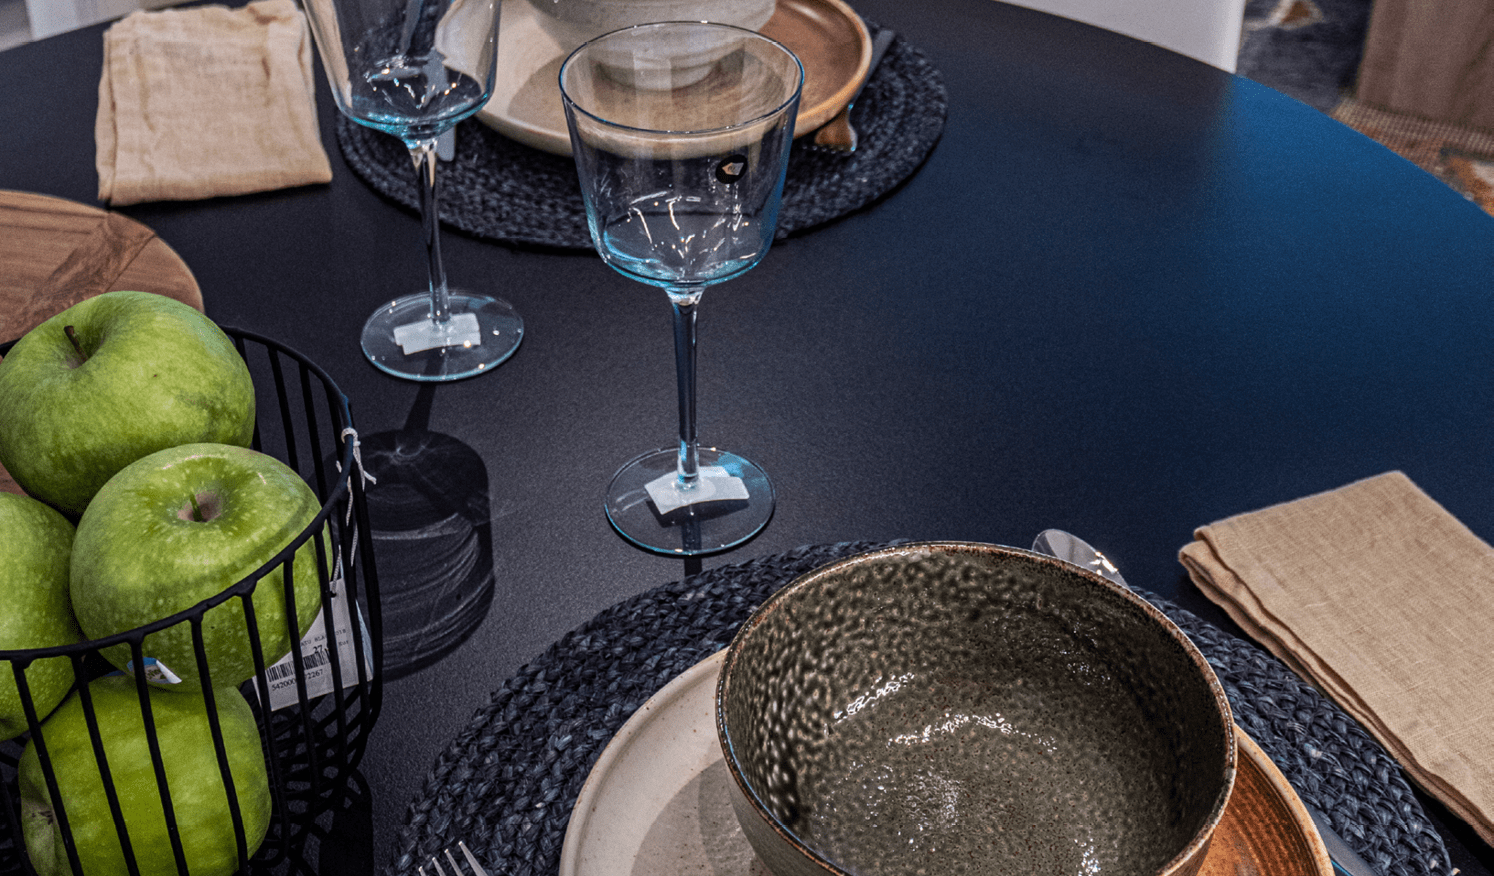 Apartamentos turísticos Montrove_Galeria_Detalles de cocina, con mesa negra, vajilla, cristal y elementos de decoración